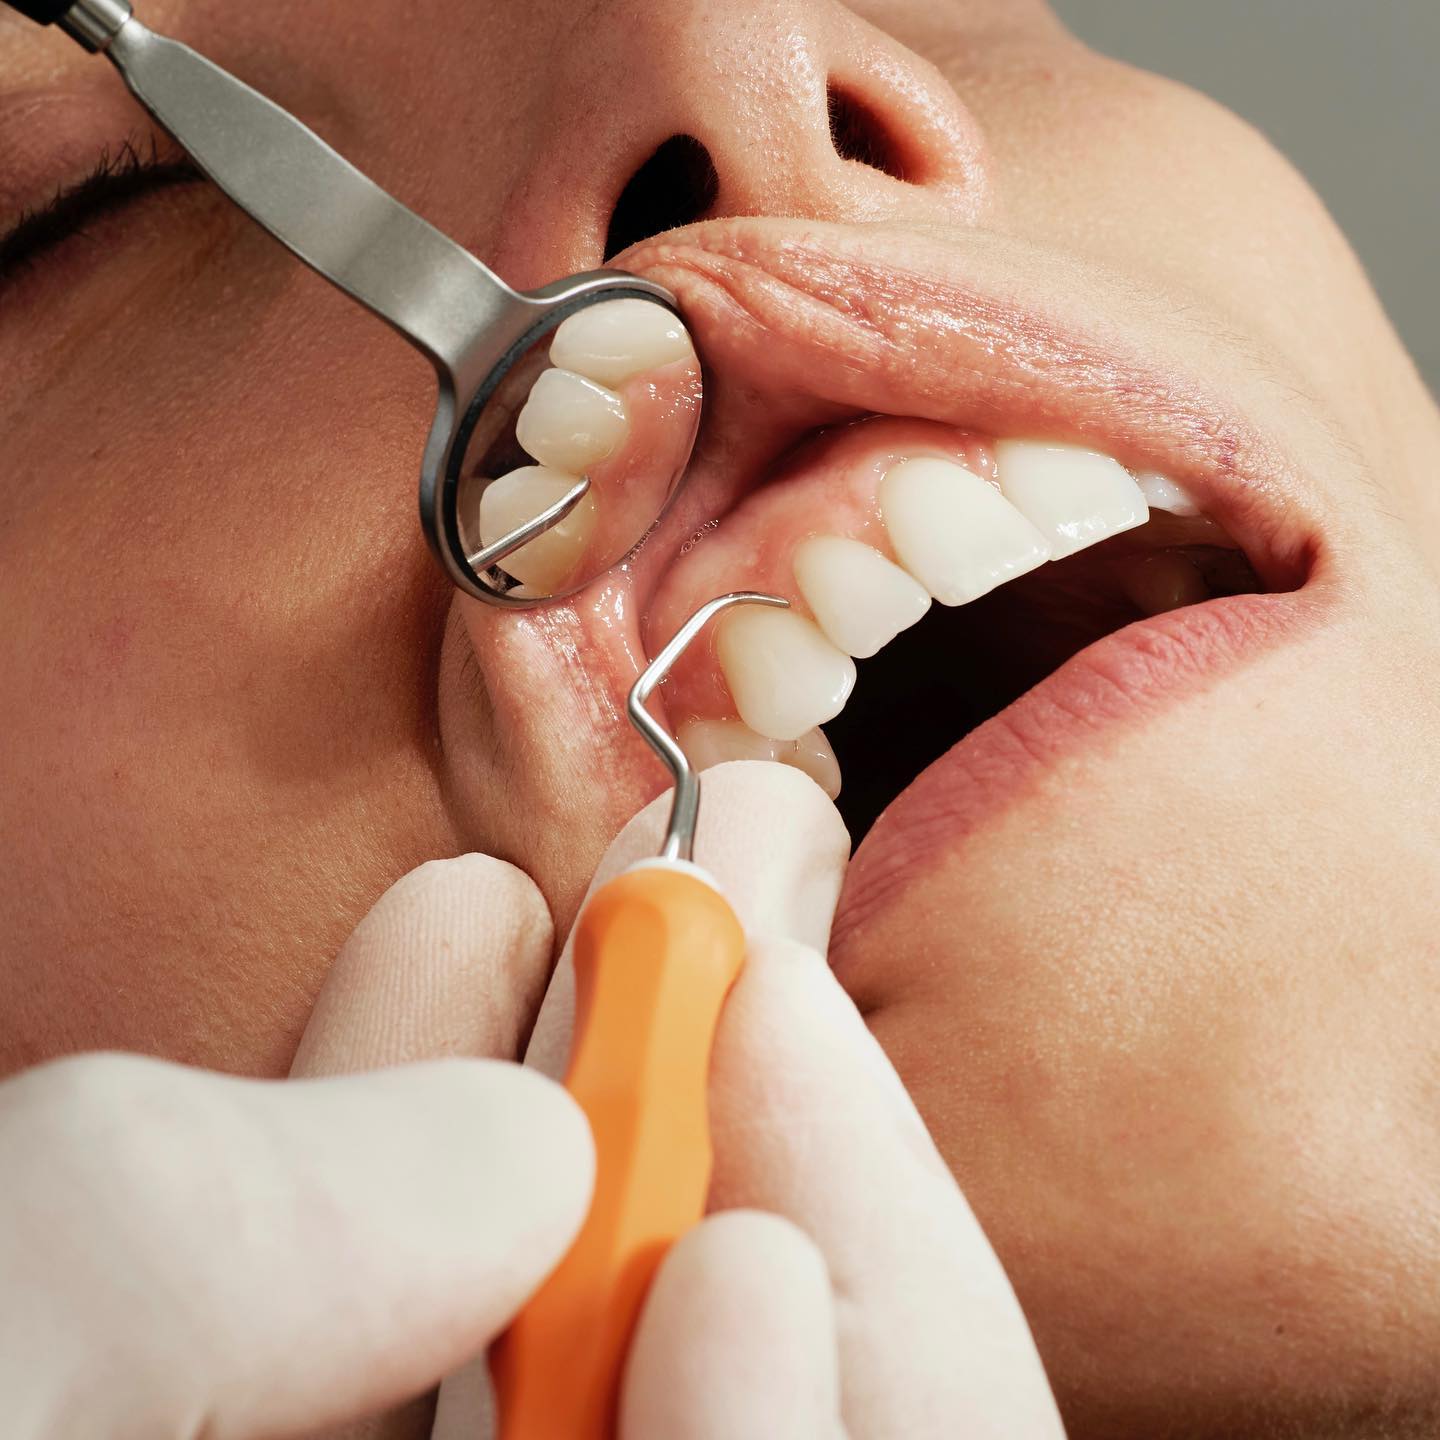 Empfindliche Zähne: 7 SOS-Tipps 😬
 
Kennst Du das? Du genießt ein kühles Eis als plötzlich - autsch! - ein blitzartiger Schmerz durch Deine Zähne fährt. 🦷⚡ 

Schuld daran sind in der Regel freiliegende Zahnhälse, durch die Deine Zähne besonders empfindlich auf Heißes und Kaltes reagieren. 
 
Sensible Zähne sind also ganz schön unangenehm. Deshalb möchten wir Dir 7 schnelle Tipps gegen Schmerzen durch freiliegende Zahnhälse geben:
 
👉 Weniger Druck beim Zähneputzen
👉 Fluoridhaltige Zahnpasta nutzen
👉 Regelmäßige Prophylaxen (Wir führen bei unseren Patienten professionelle kieferorthopädische Zahnreinigungen durch.)
👉 Freiliegende Zahnhälse versiegeln lassen
👉 Besonders heiße und kalte Speisen meiden
👉 Auf säurehaltige Lebensmittel verzichten
👉 Zähneknirschen behandeln (Wir helfen Dir gerne mit einer individuellen, herausnehmbaren Knirschschiene.)
 
Fragen? Dann schreib uns eine Nachricht! 😊
 
Herzliche Grüße ⁣⁣⁣⁣⁣⁣
👨‍⚕️ Dr. Holtkamp & Team⁣⁣⁣⁣⁣
⁣
⁣⁣⁣⁣
#wittmund #ostfriesland #jever #esens #ostfrieslandmomente #kieferorthopädie #kieferorthopäde #zahnarzt #zahnspange #fachzahnarzt #praxis #kfo #dentalart #lächelnnichtvergessen #lächelnmachtglücklich #behandlung #zahnspangenlächeln #schöneslächeln #brackets #zahnspangen #kreativaufinstagram #gemeinsamdurchinsta